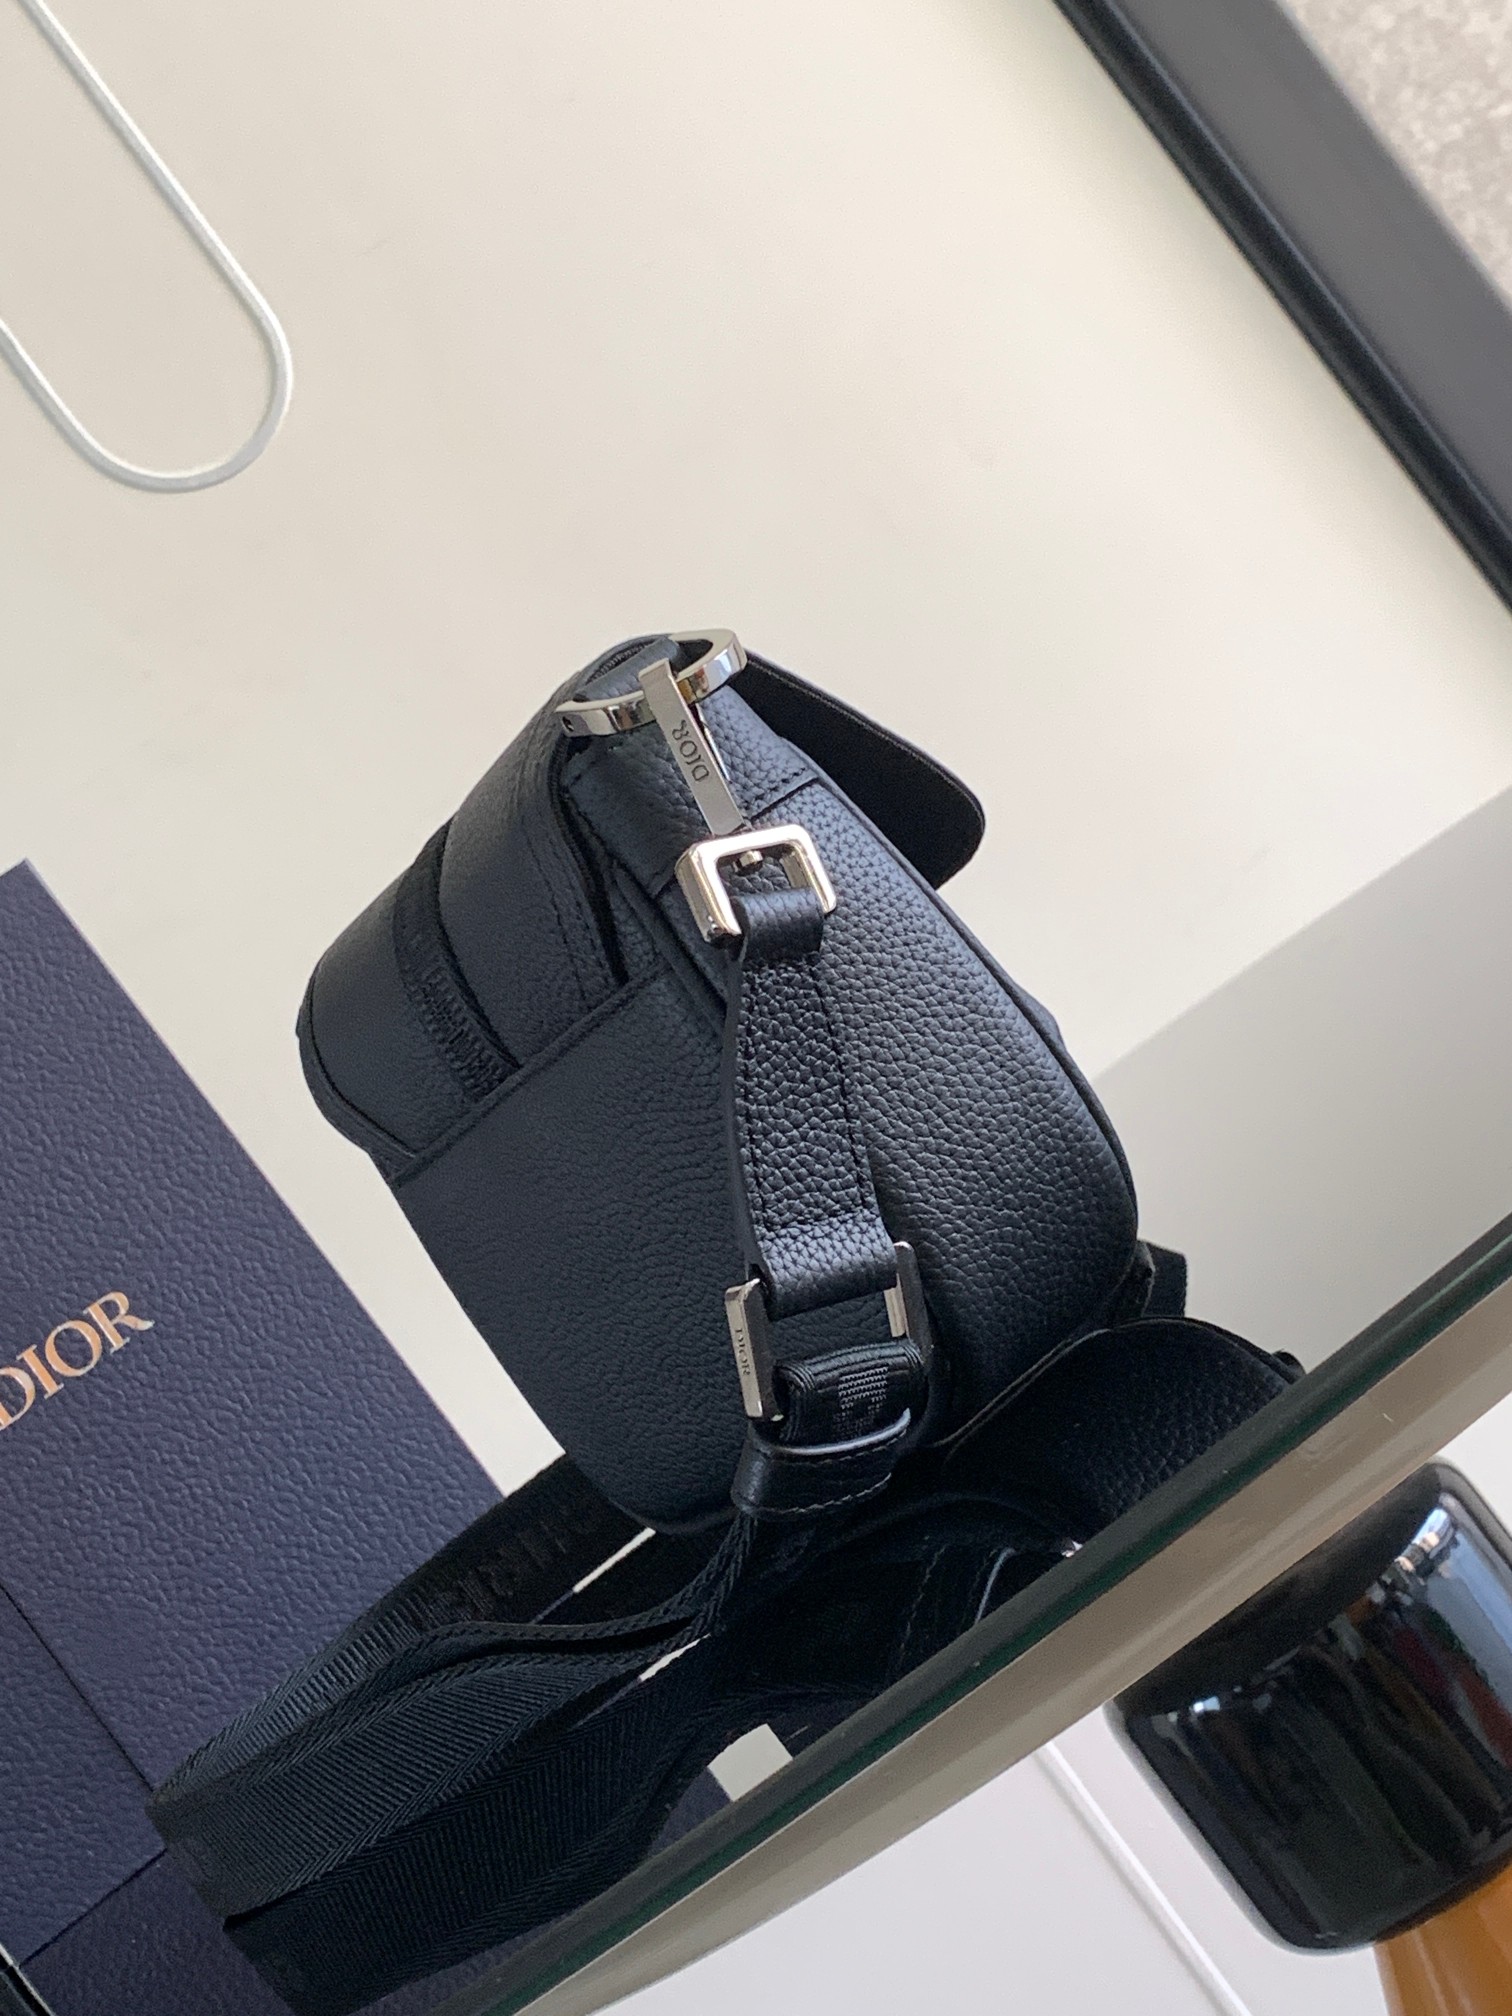 Replica Dior Hit the Road handbag